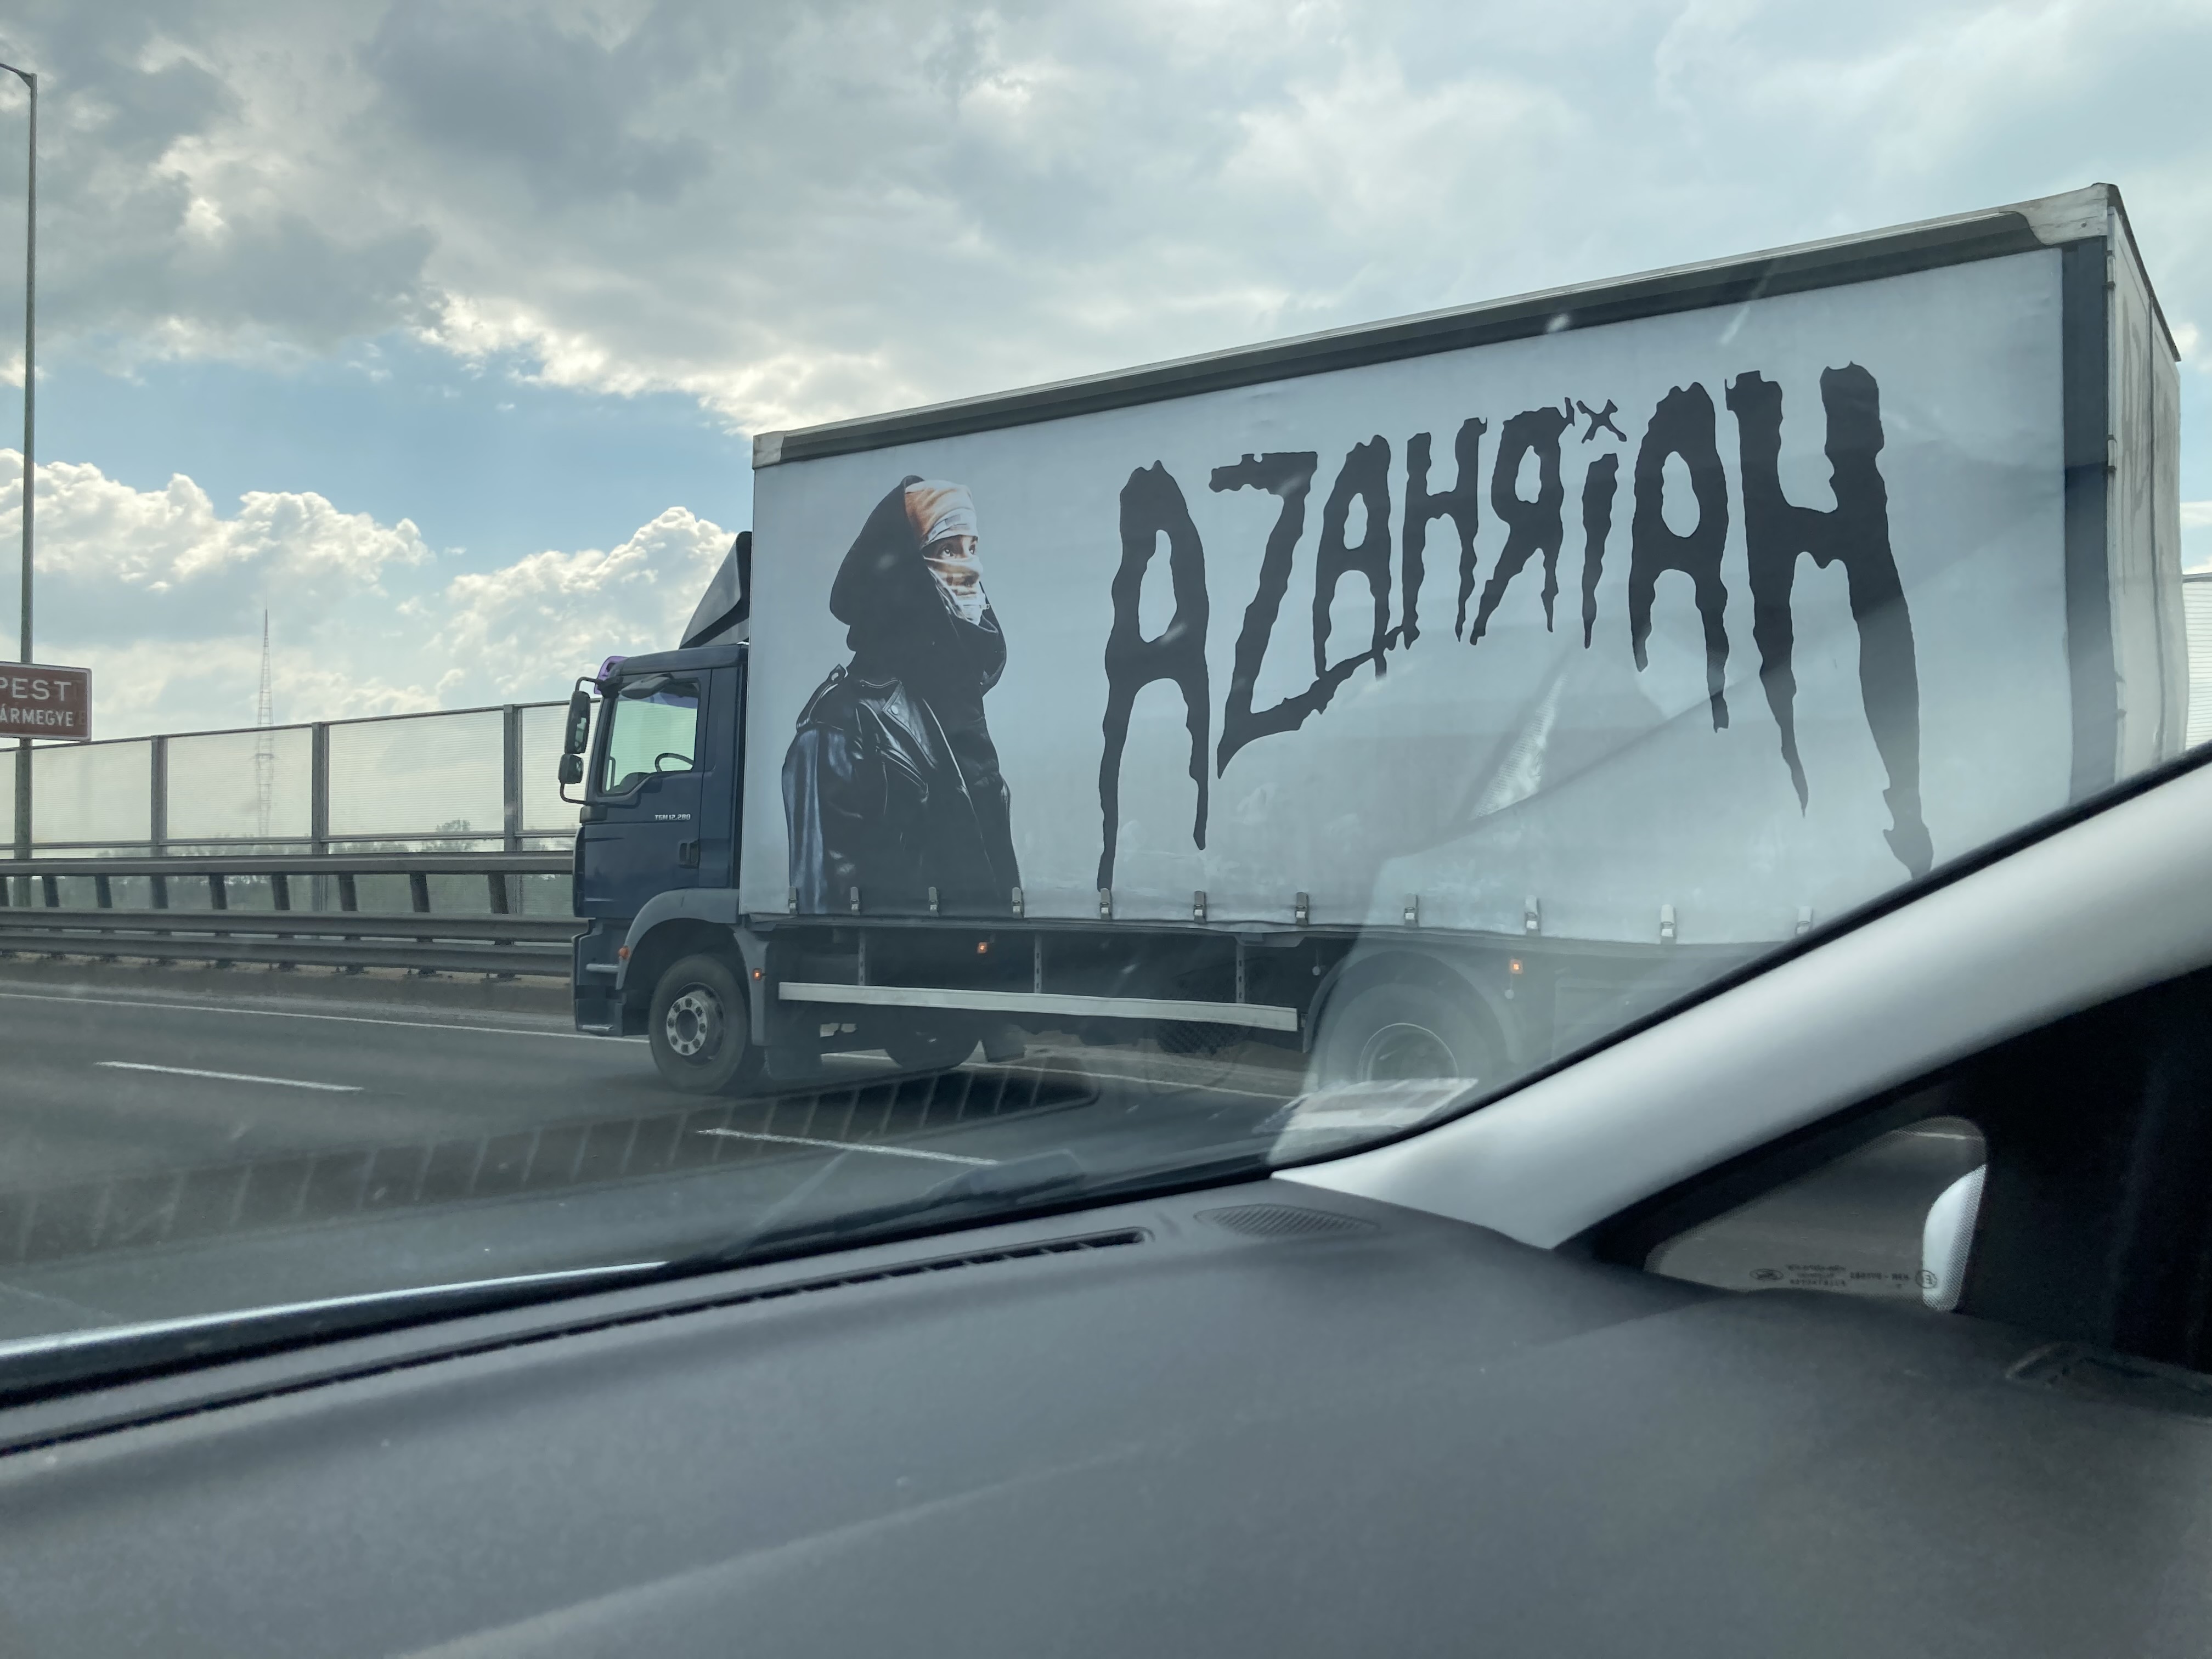 Így néz ki a kamion, mely Azahriah koncertfelszerelését szállítja - Blikk